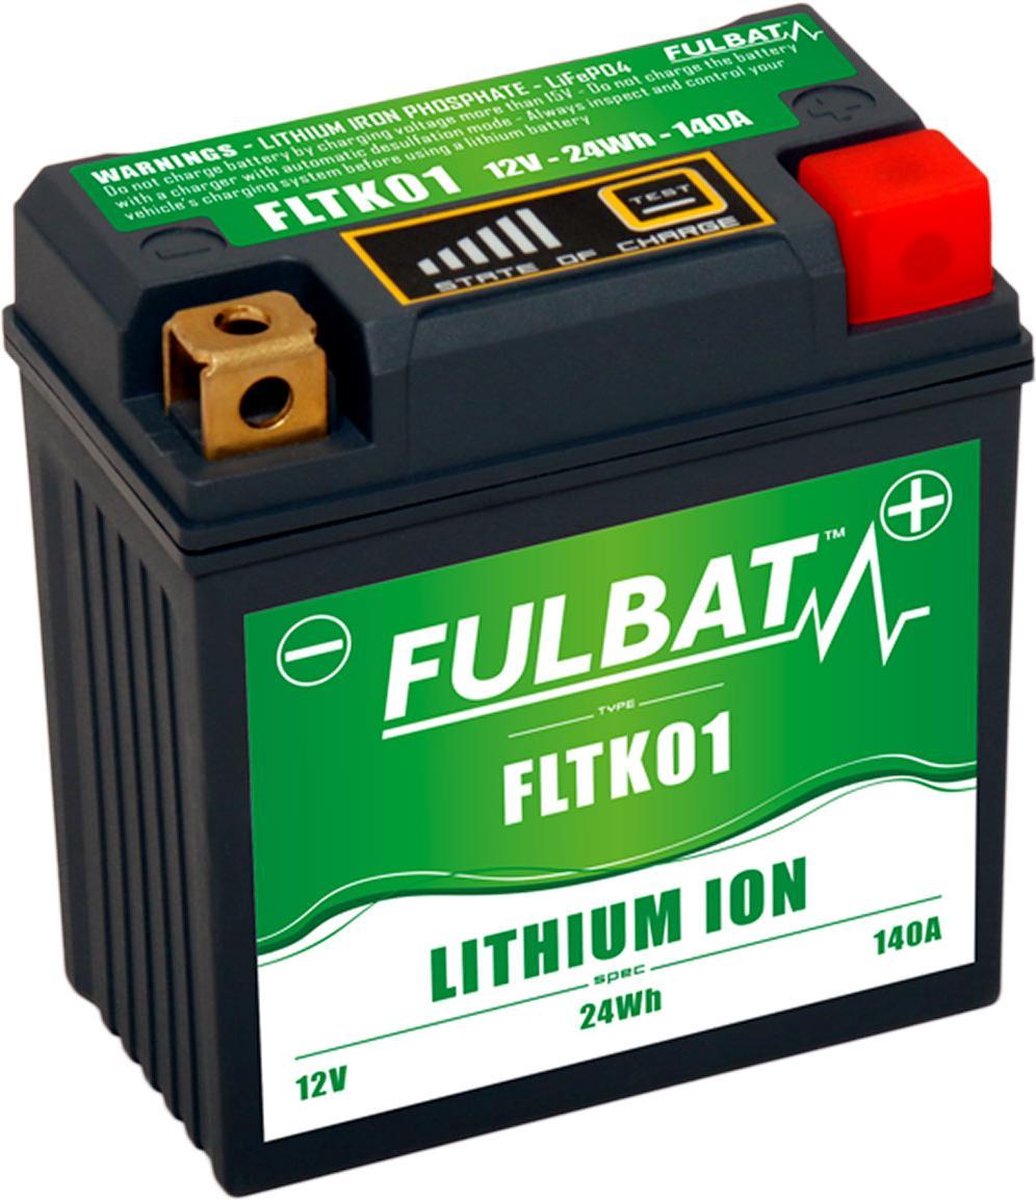 Fulbat FLTK01 Lithium-ion Motoraccu -